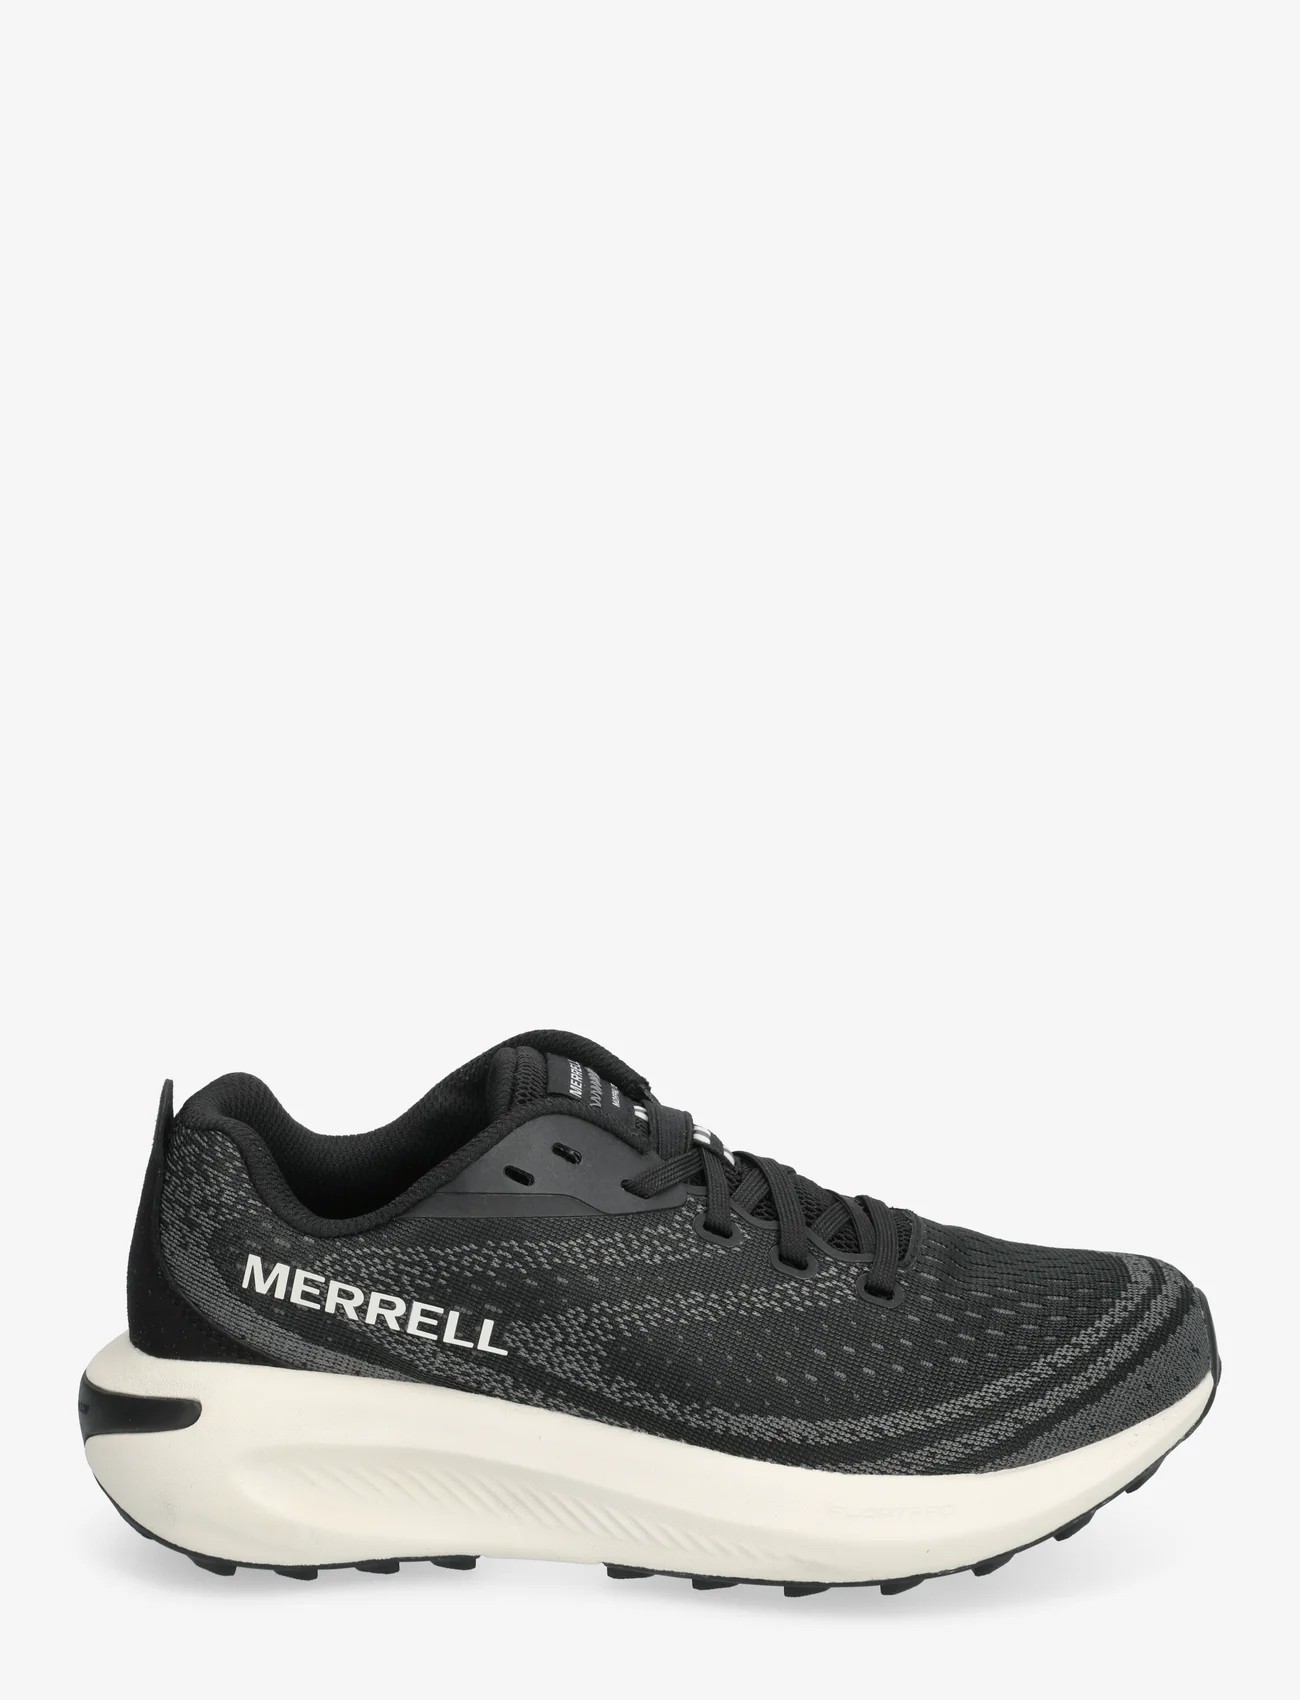 Merrell - Women's Morphlite - Black/White - jooksujalatsid - black/white - 1